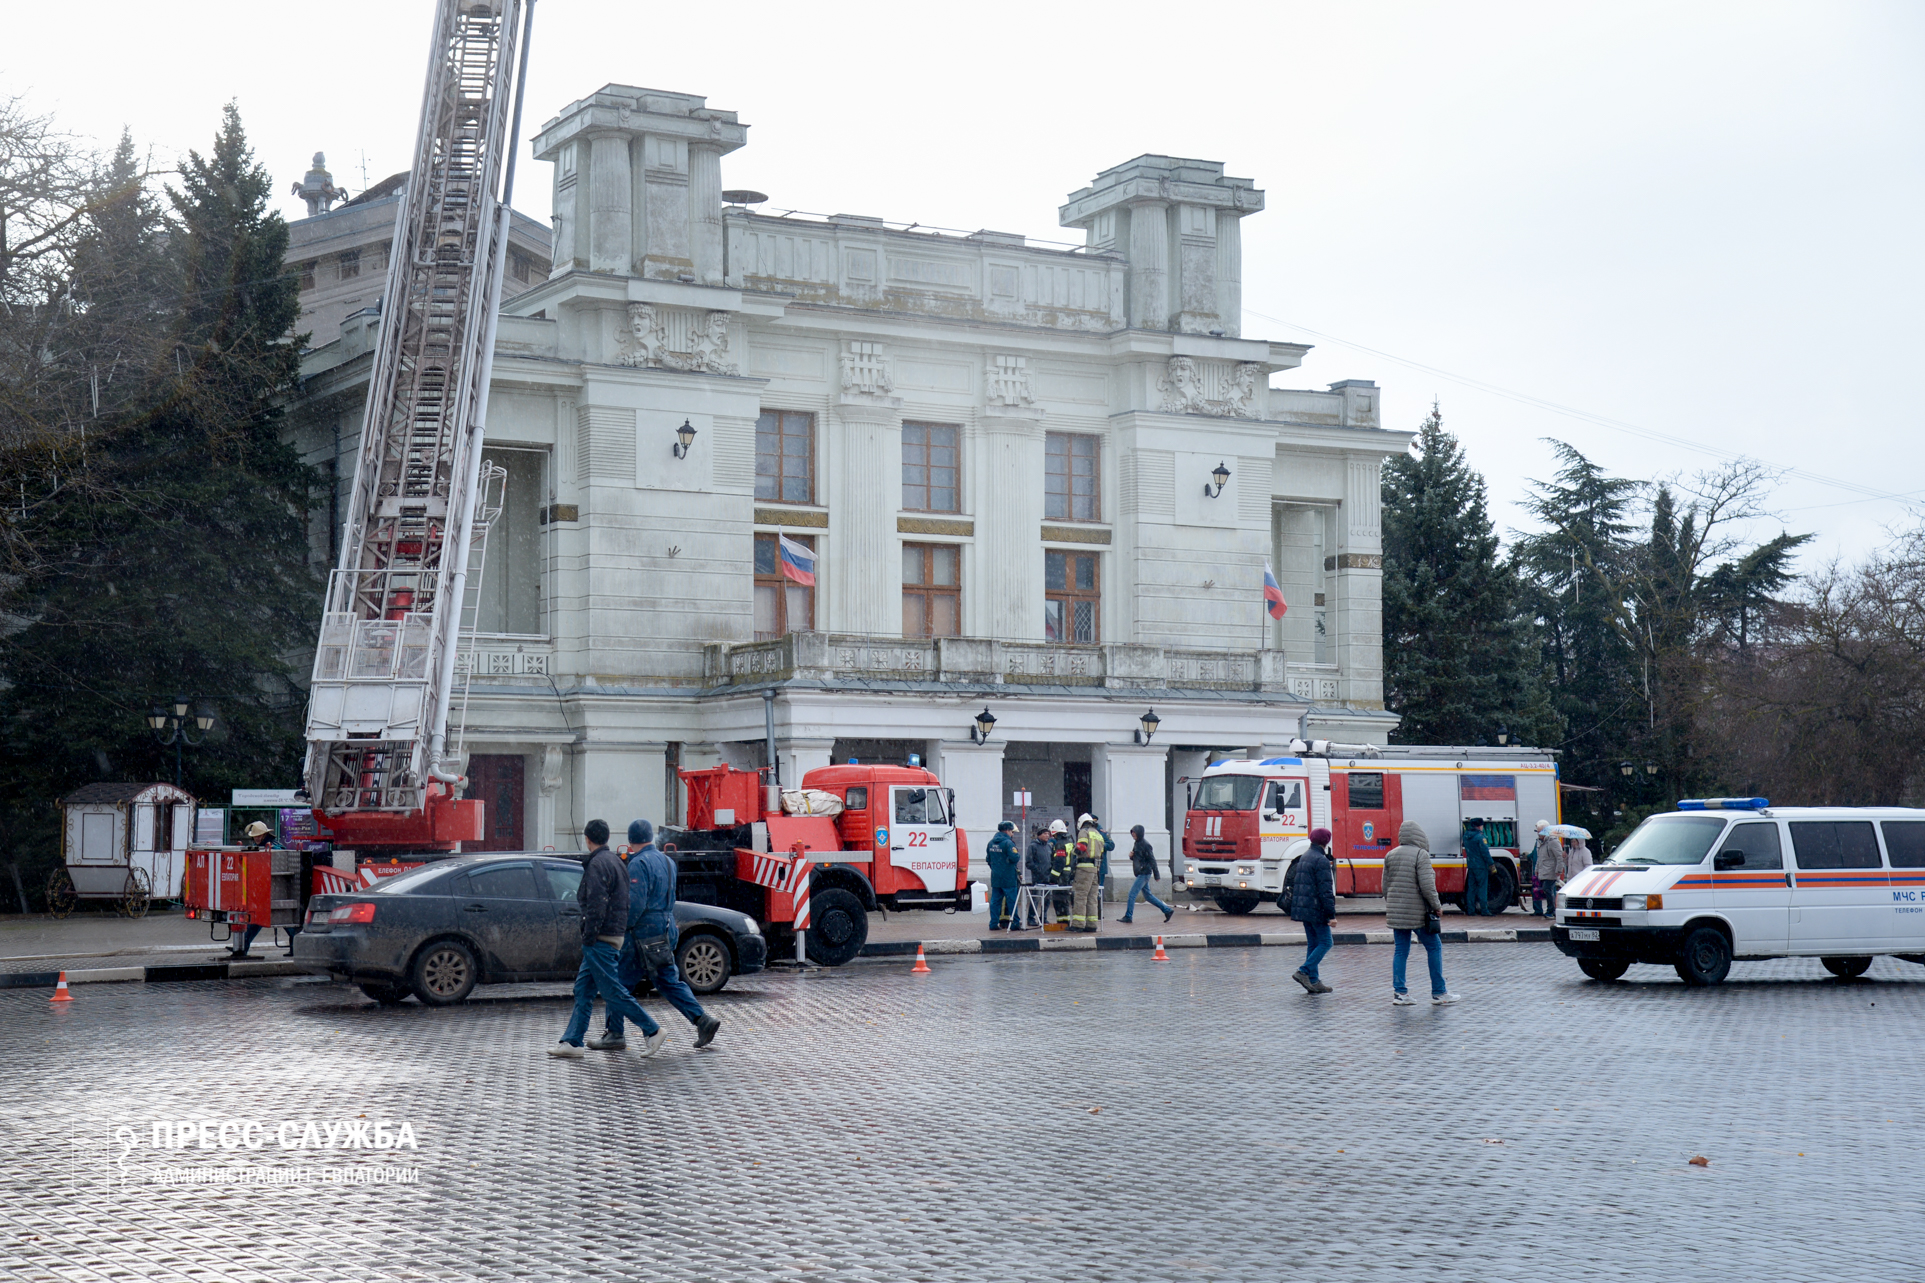 Сотрудники МЧС России провели пожарно-тактические учения в крымском театре